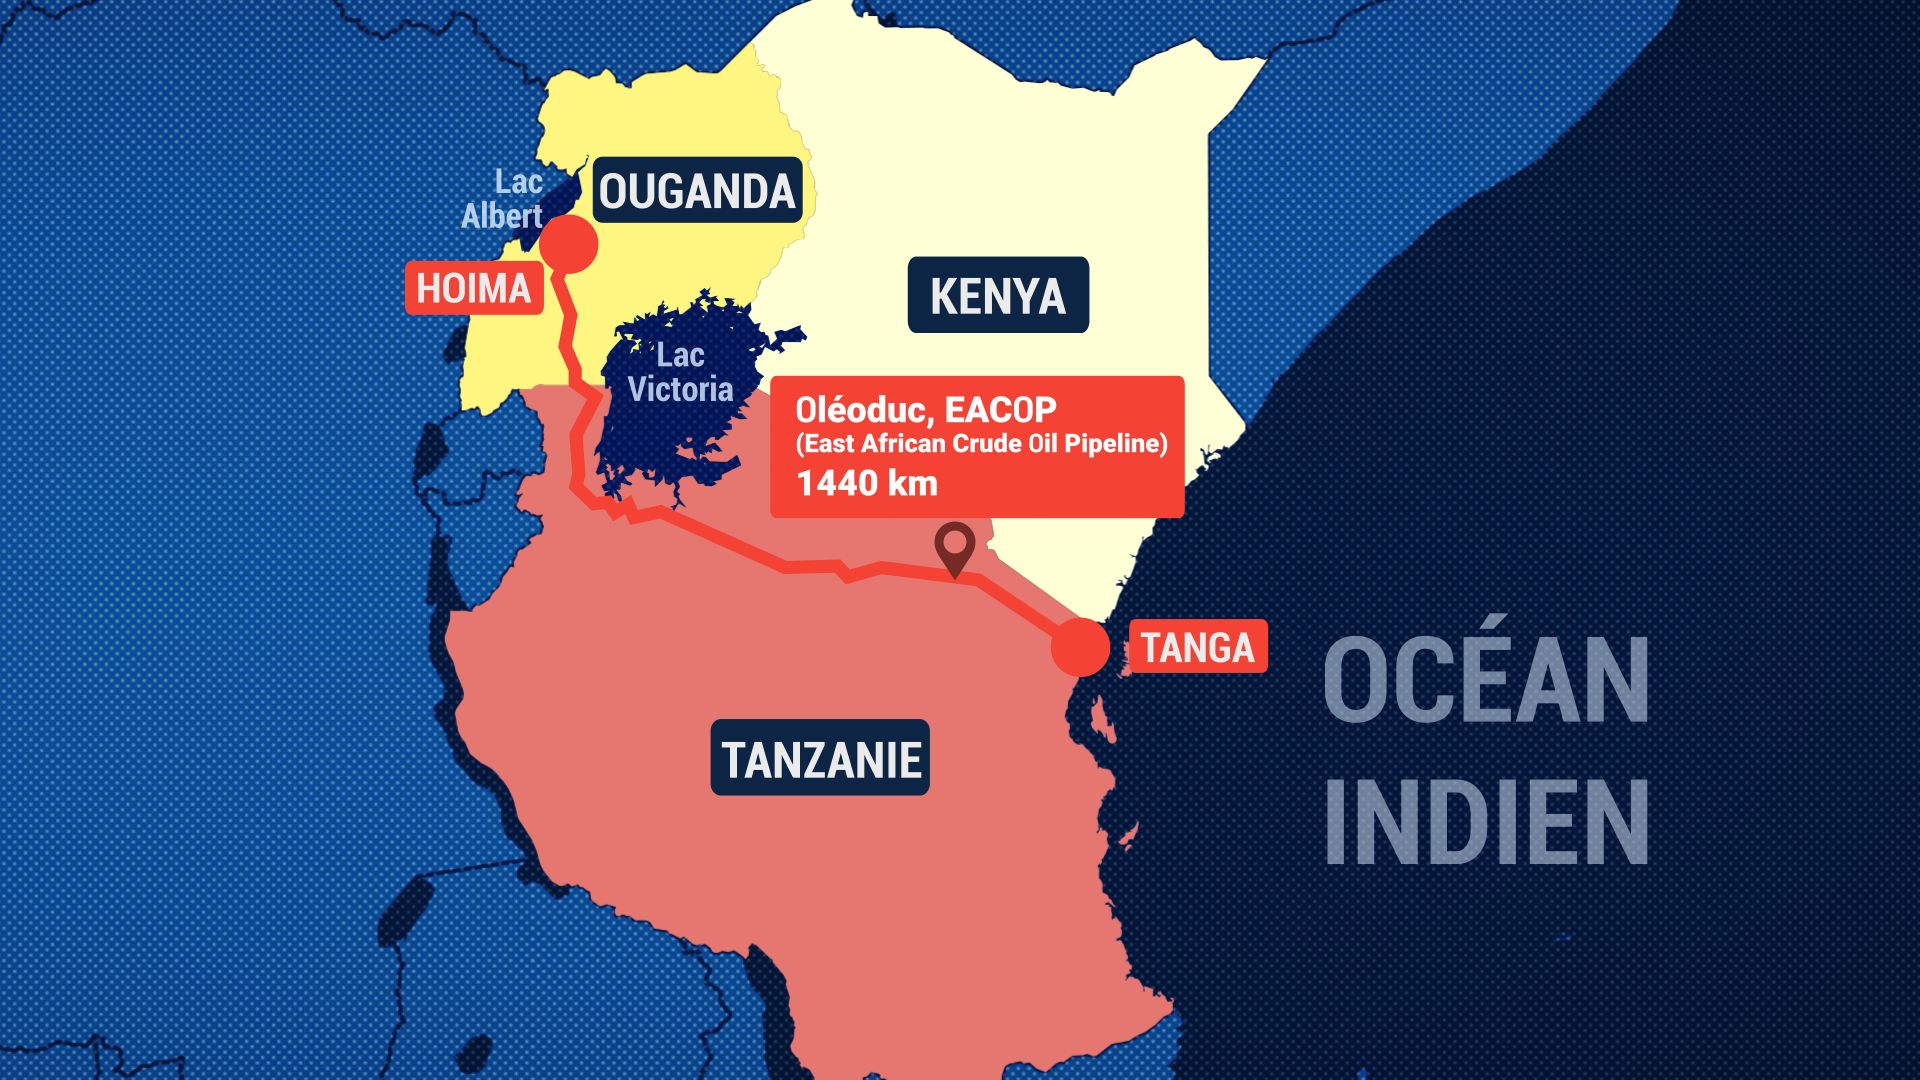 Le mégaprojet très controversé, prévoit d’extraire du pétrole en Ouganda et de transporter l’or noir jusqu’à l’océan Indien, dans ce qui sera le plus long oléoduc chauffé au monde.